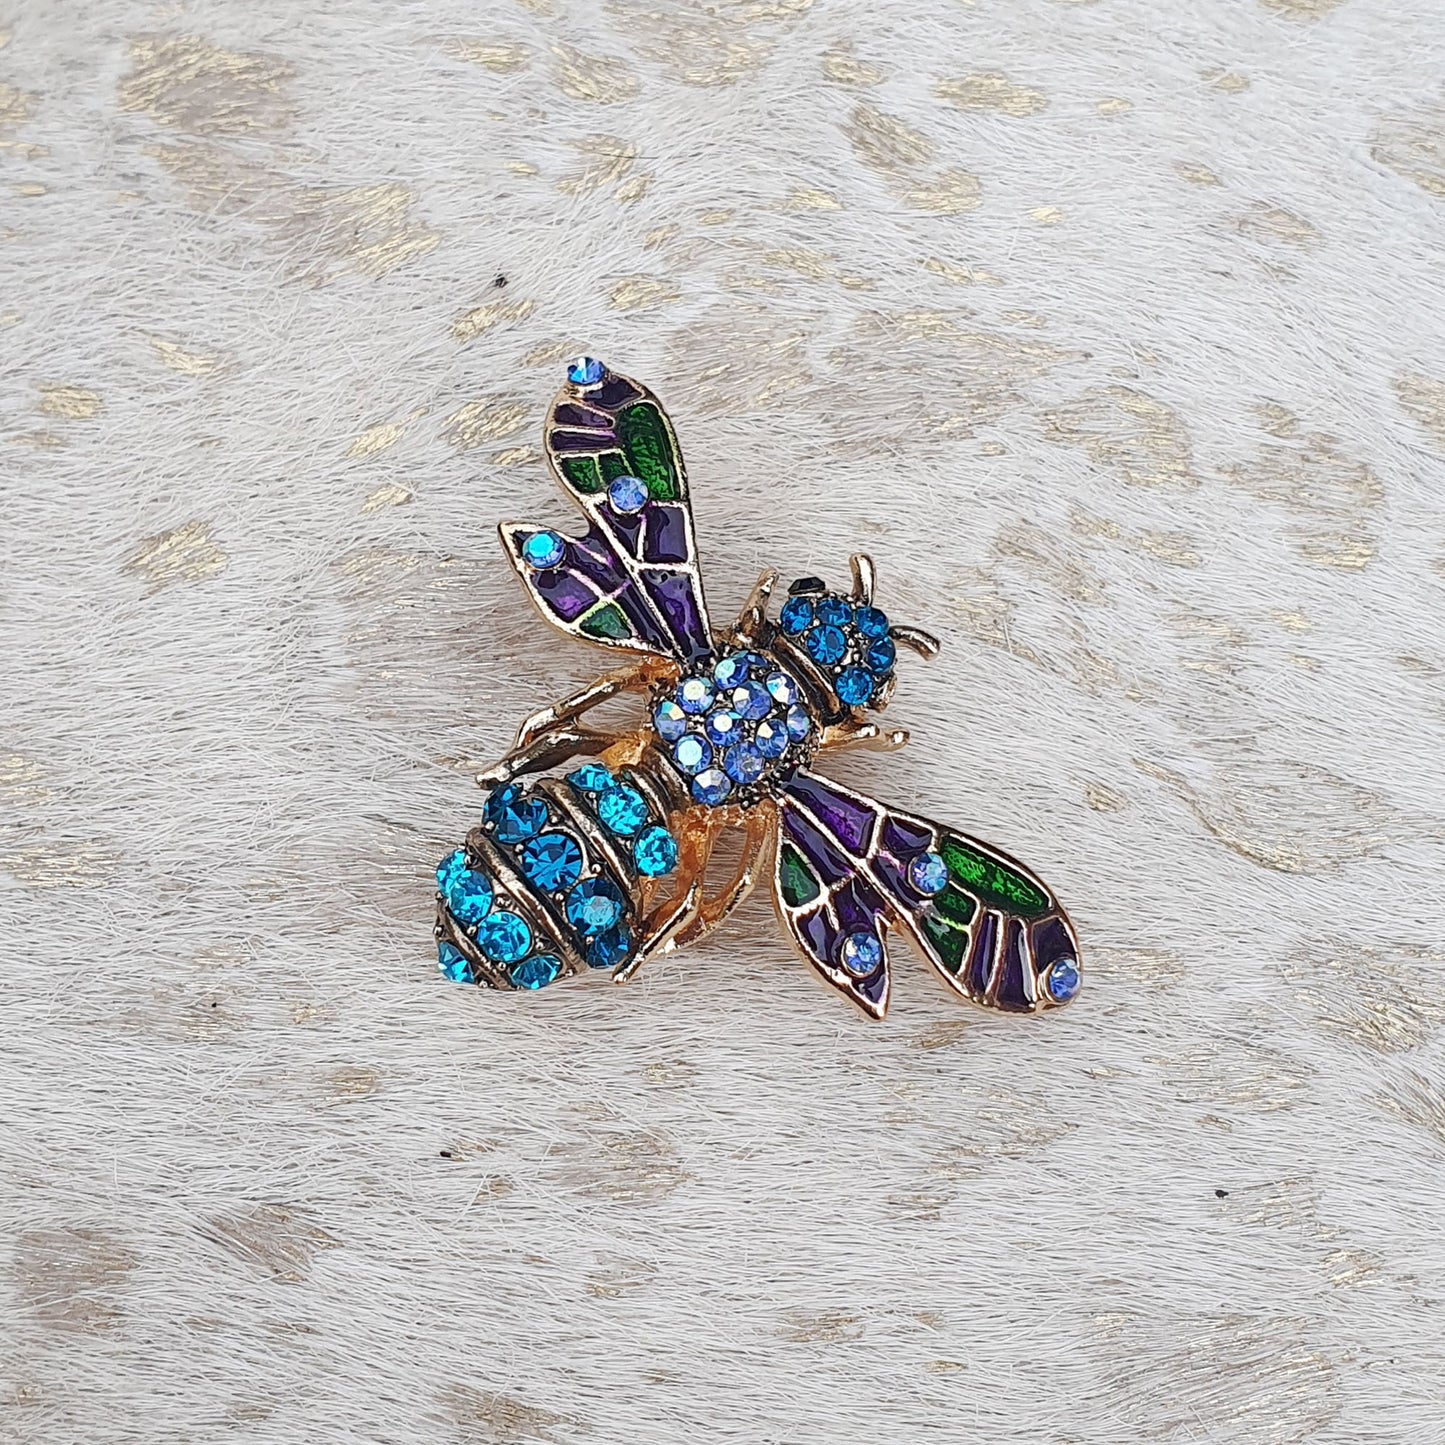 Blue diamante bee brooch